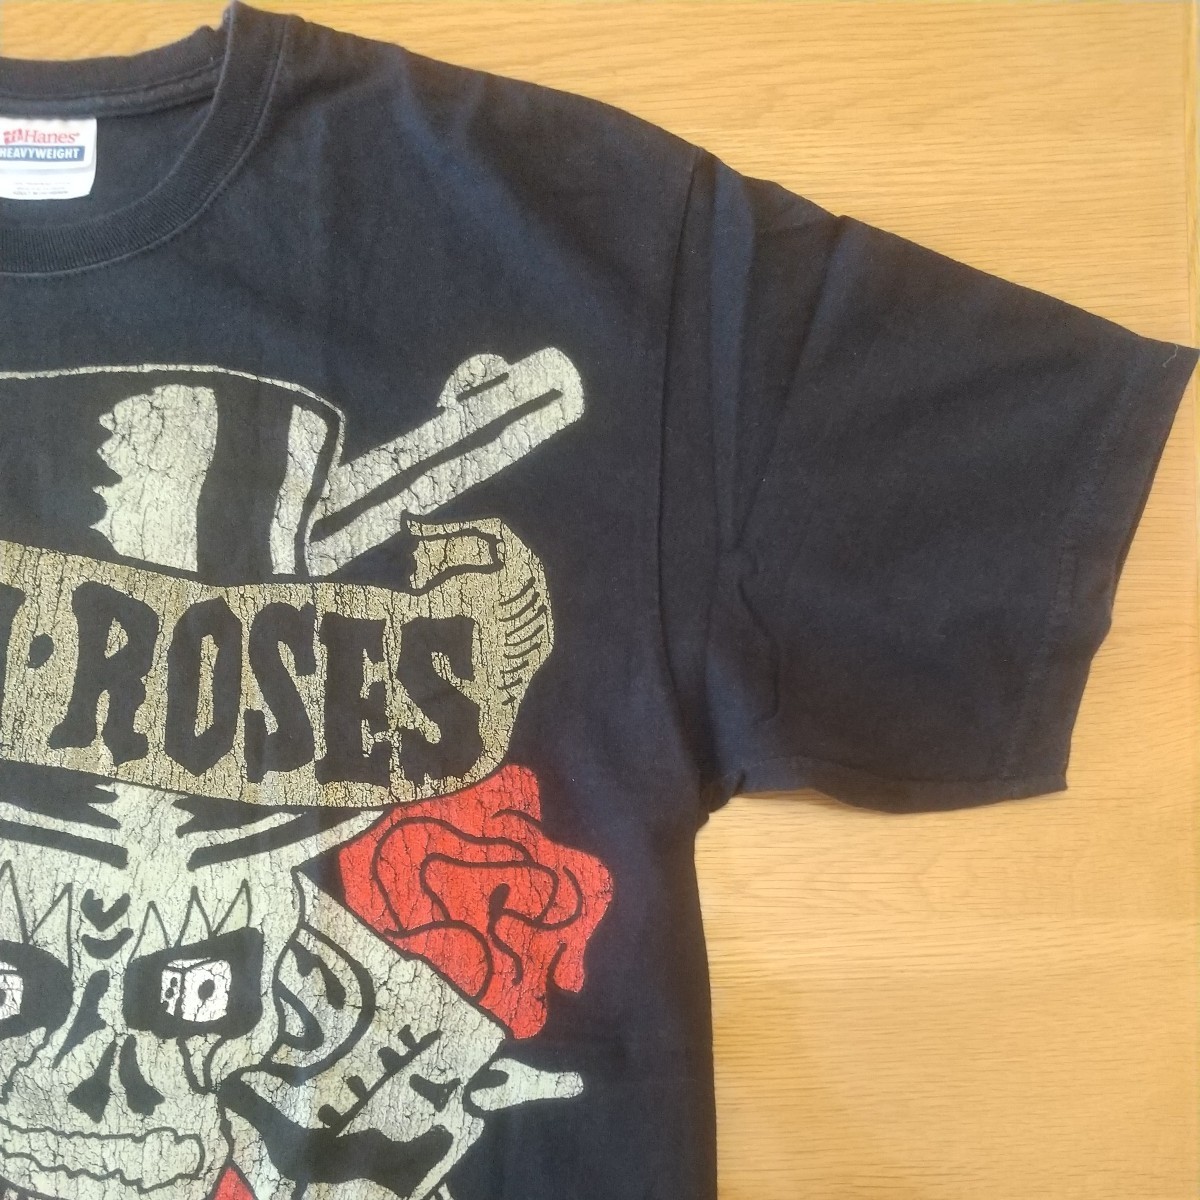 ガンズ・アンド・ローゼズ 【正規品】 Guns N' Roses ロックTシャツ② 黒 Mサイズ USED GN'R 【コピーライト 2008】_画像6